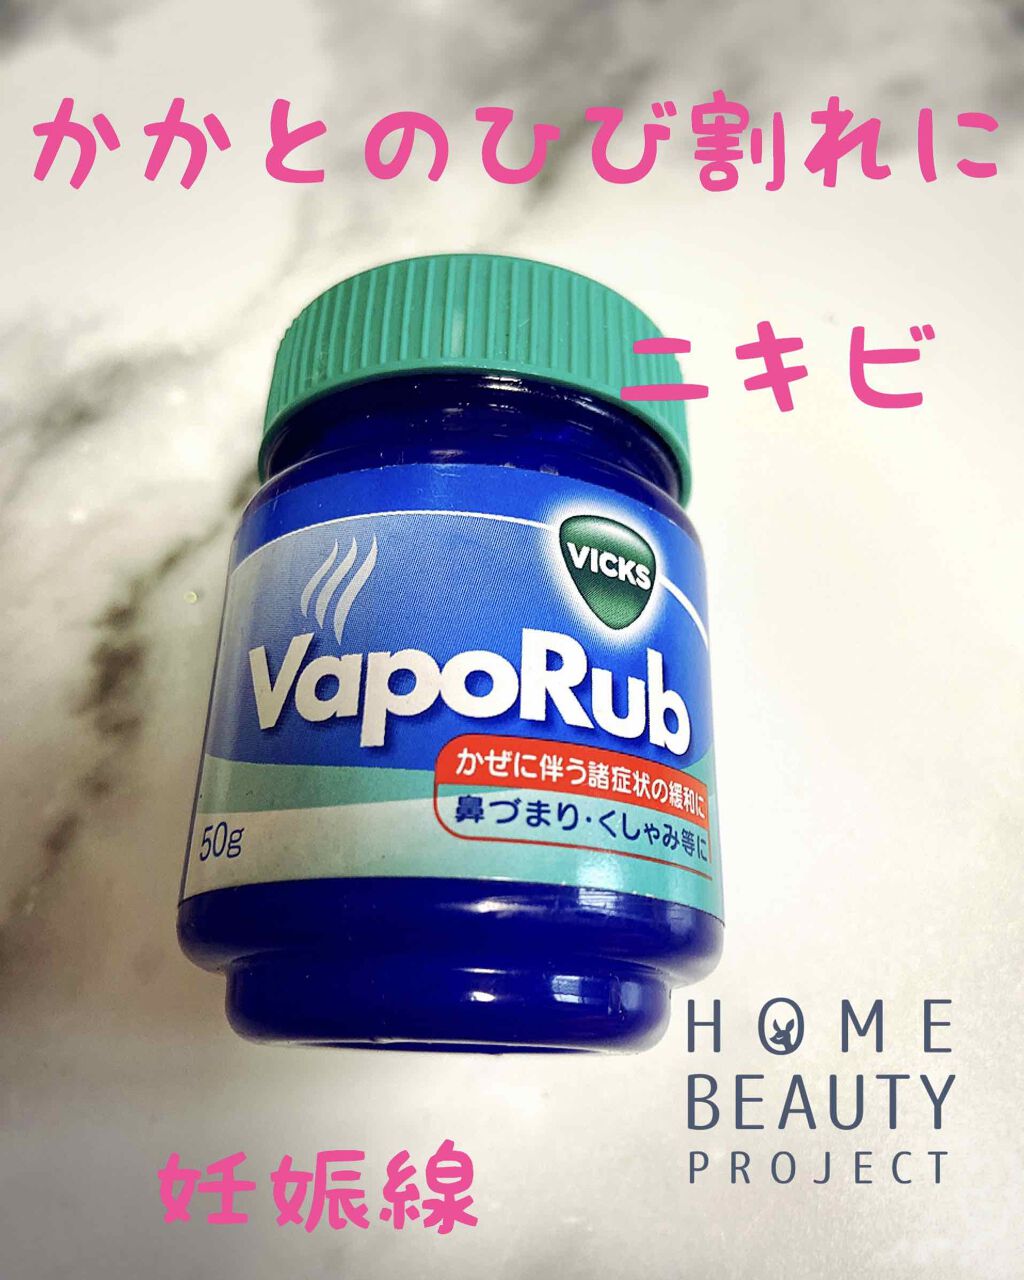 ヴイックスヴェポラッブ 大正製薬の口コミ 大正製薬さんの商品ヴイックス ヴェポラップ By Yo Chan 乾燥肌 Lips